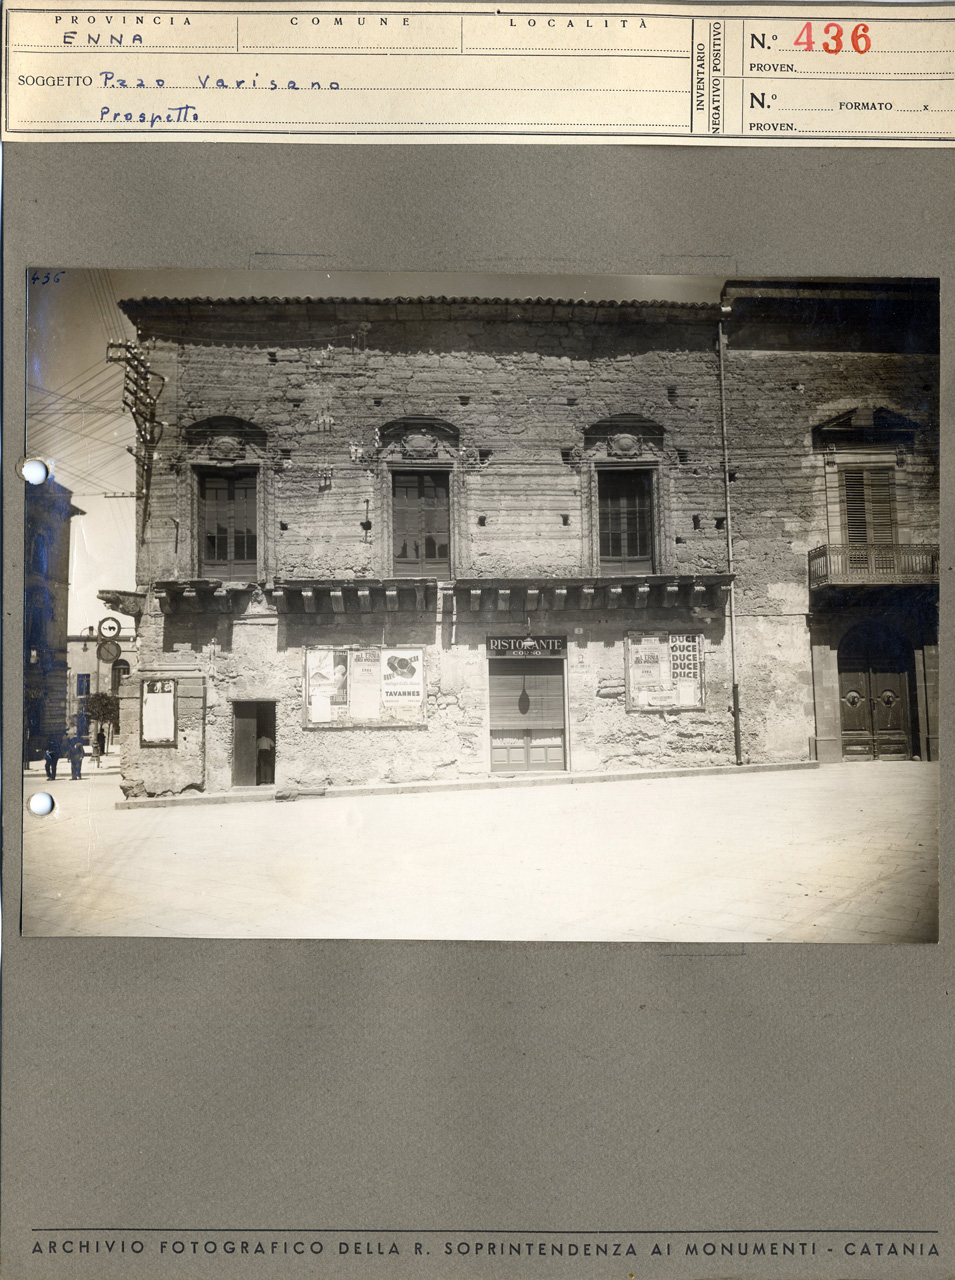 Sicilia - Enna - Architettura civile - Palazzo Varisano di Pasquasia - Veduta del prospetto est (positivo, elemento-parte componente, scheda di supporto) di Anonimo <1901-1950> (secondo quarto XX)